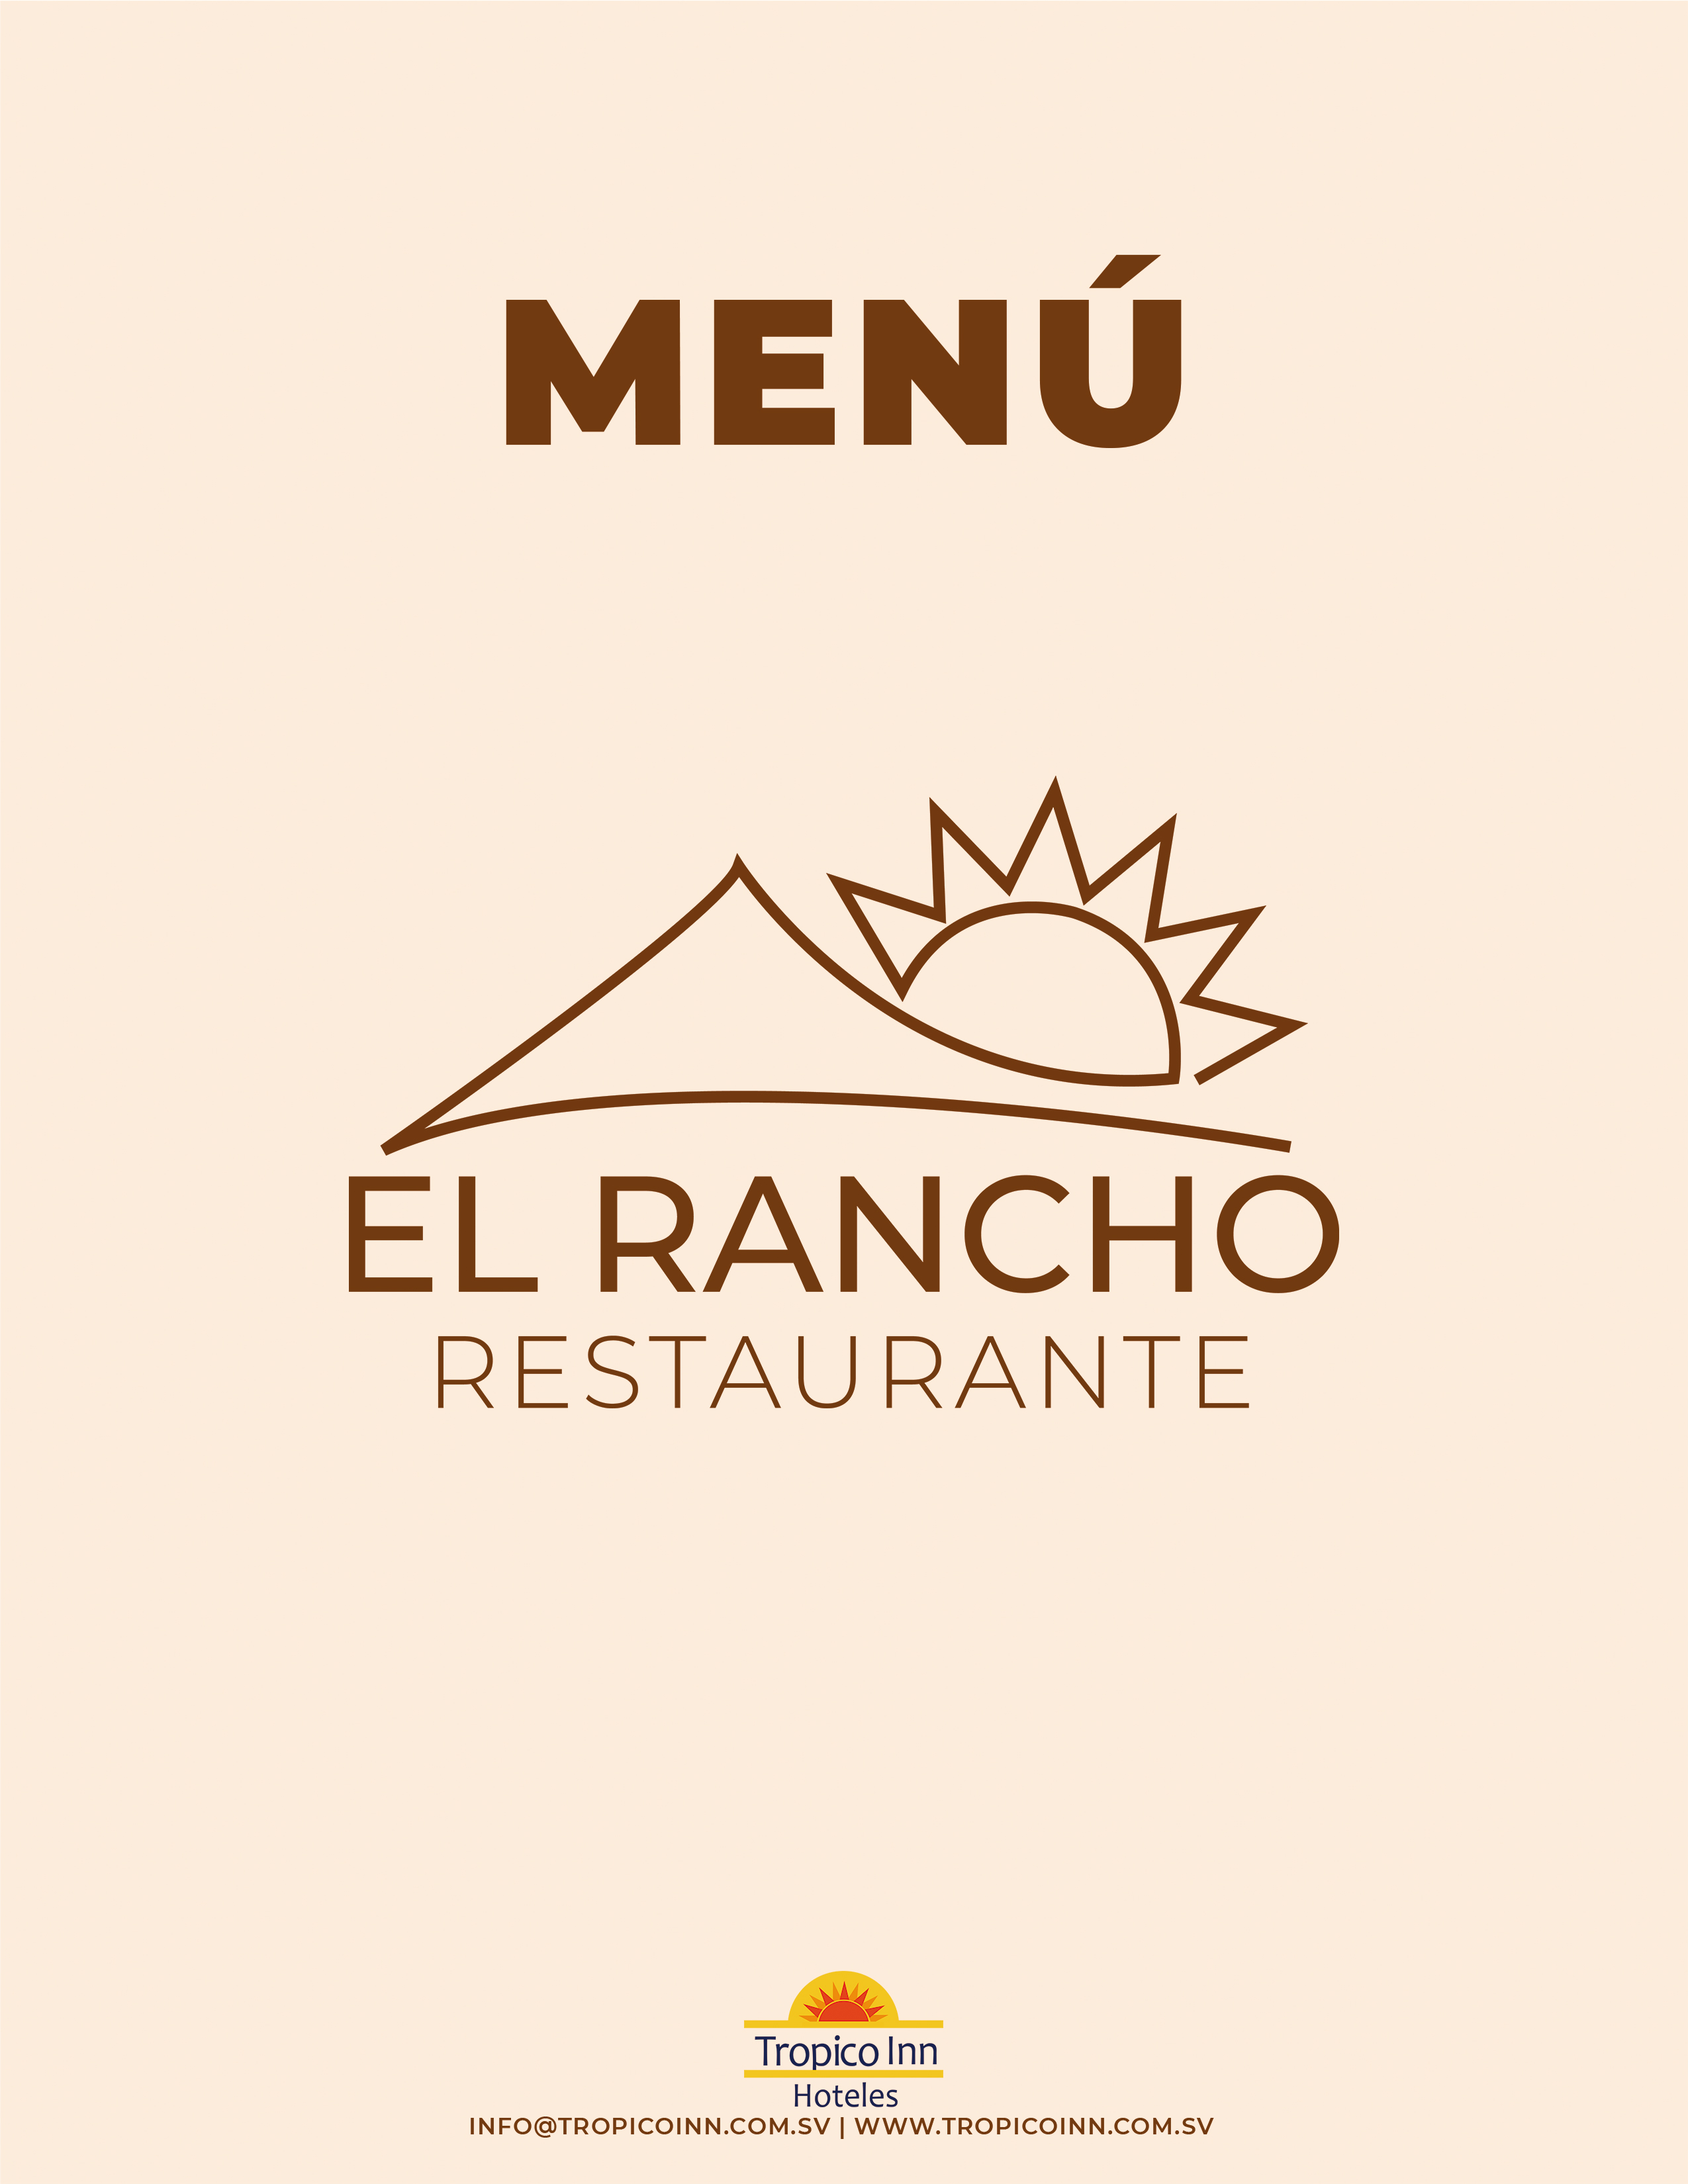 Menu El Rancho: A la carta